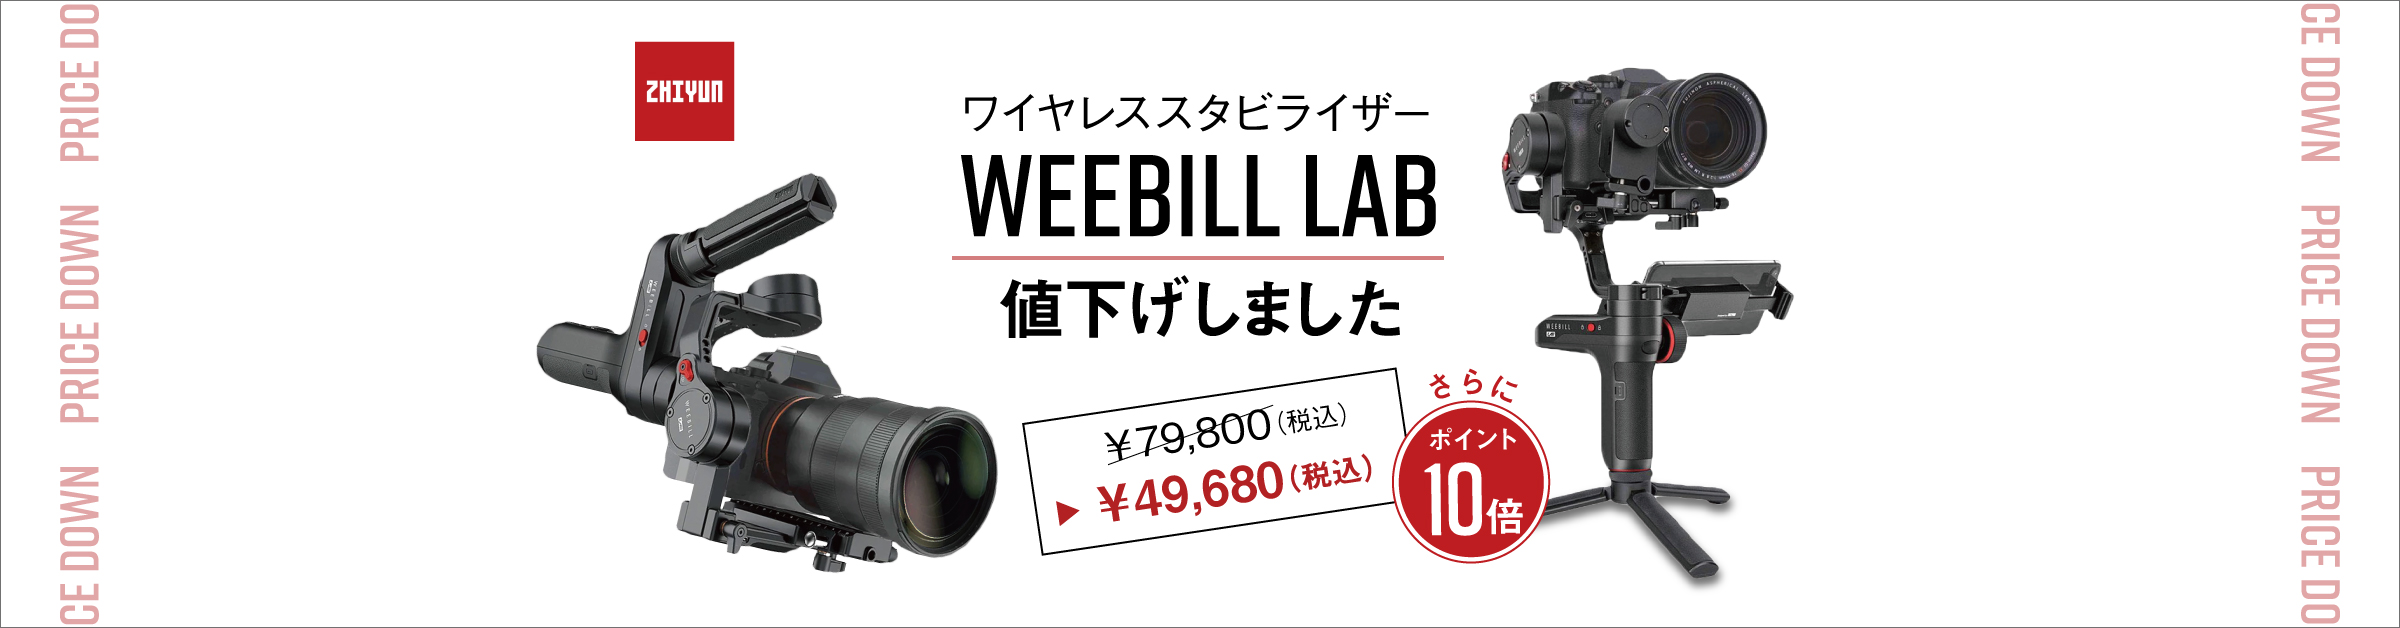 【値下げ】Zhiyunのミラーレスカメラ用ジンバル「Weebill Lab ...